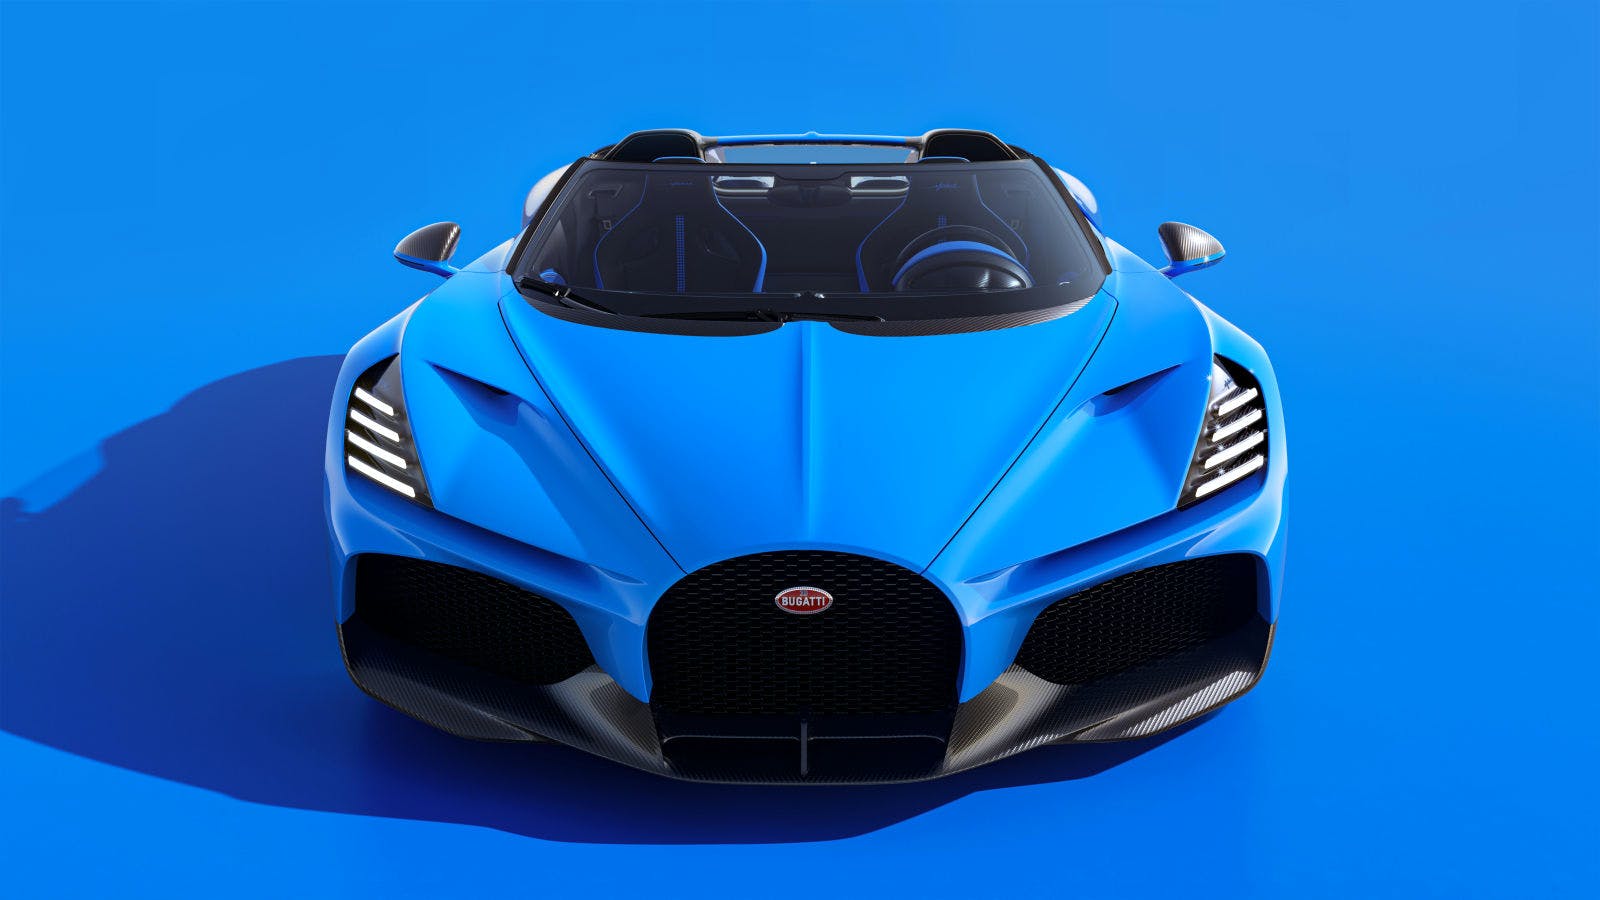 Siêu xe Bugatti Mistral ra mắt với kiểu dáng thiết kế mới, chỉ sản xuất 99 chiếc nhưng đã bán hết